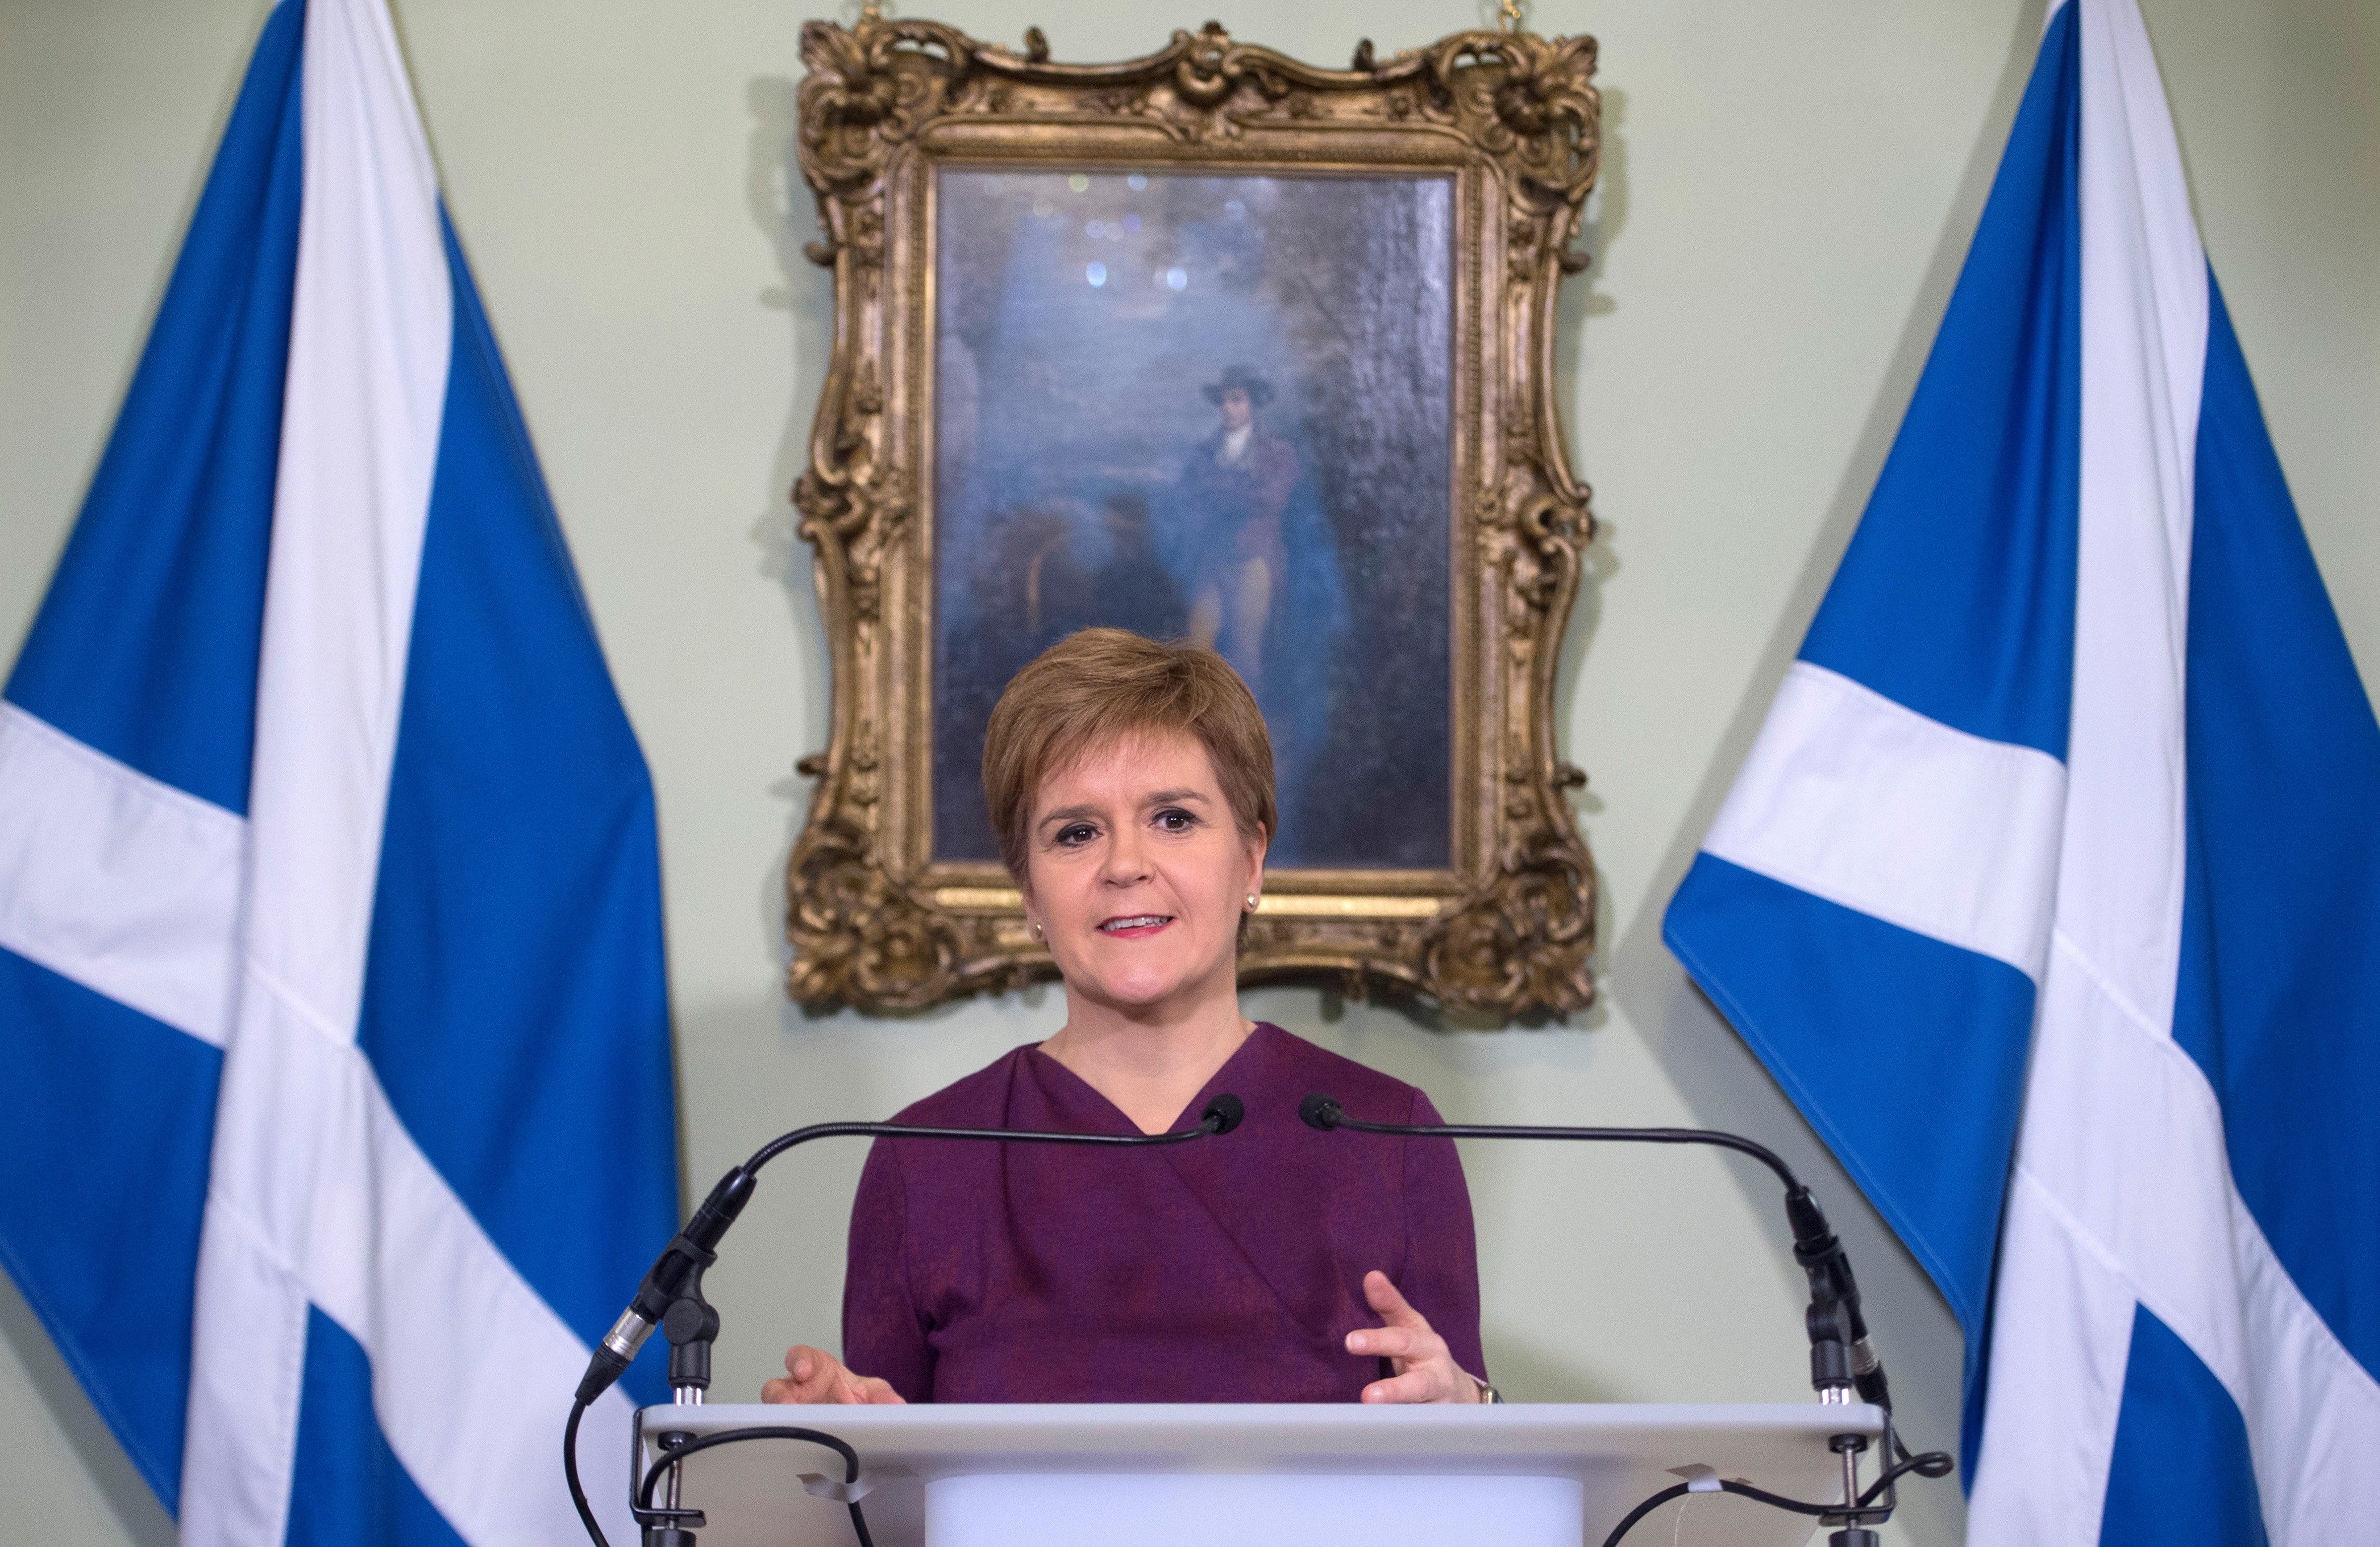 Skócia hivatalosan felszólította a brit kormányt, hogy engedélyezzék az új függetlenségi népszavazást